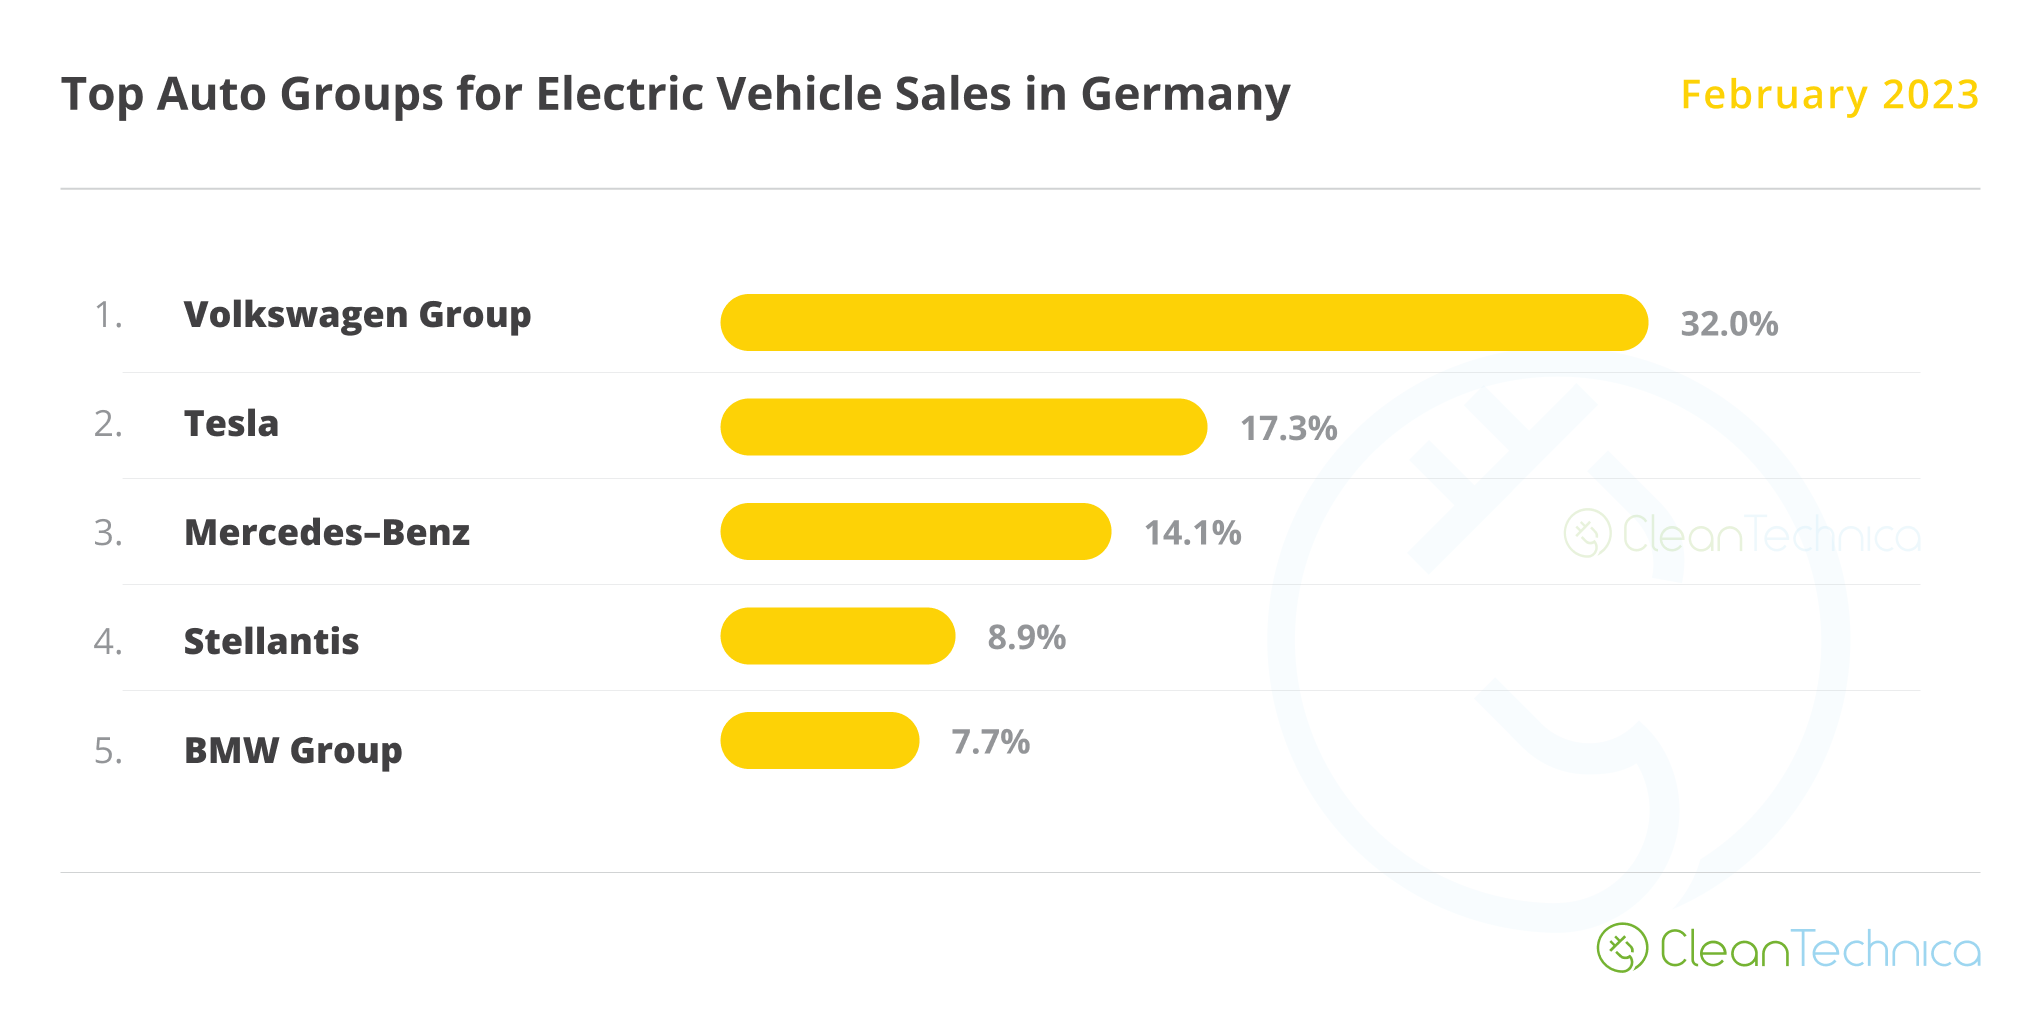 독일에서 가장 많은 전기 자동차를 판매하는 자동차 그룹